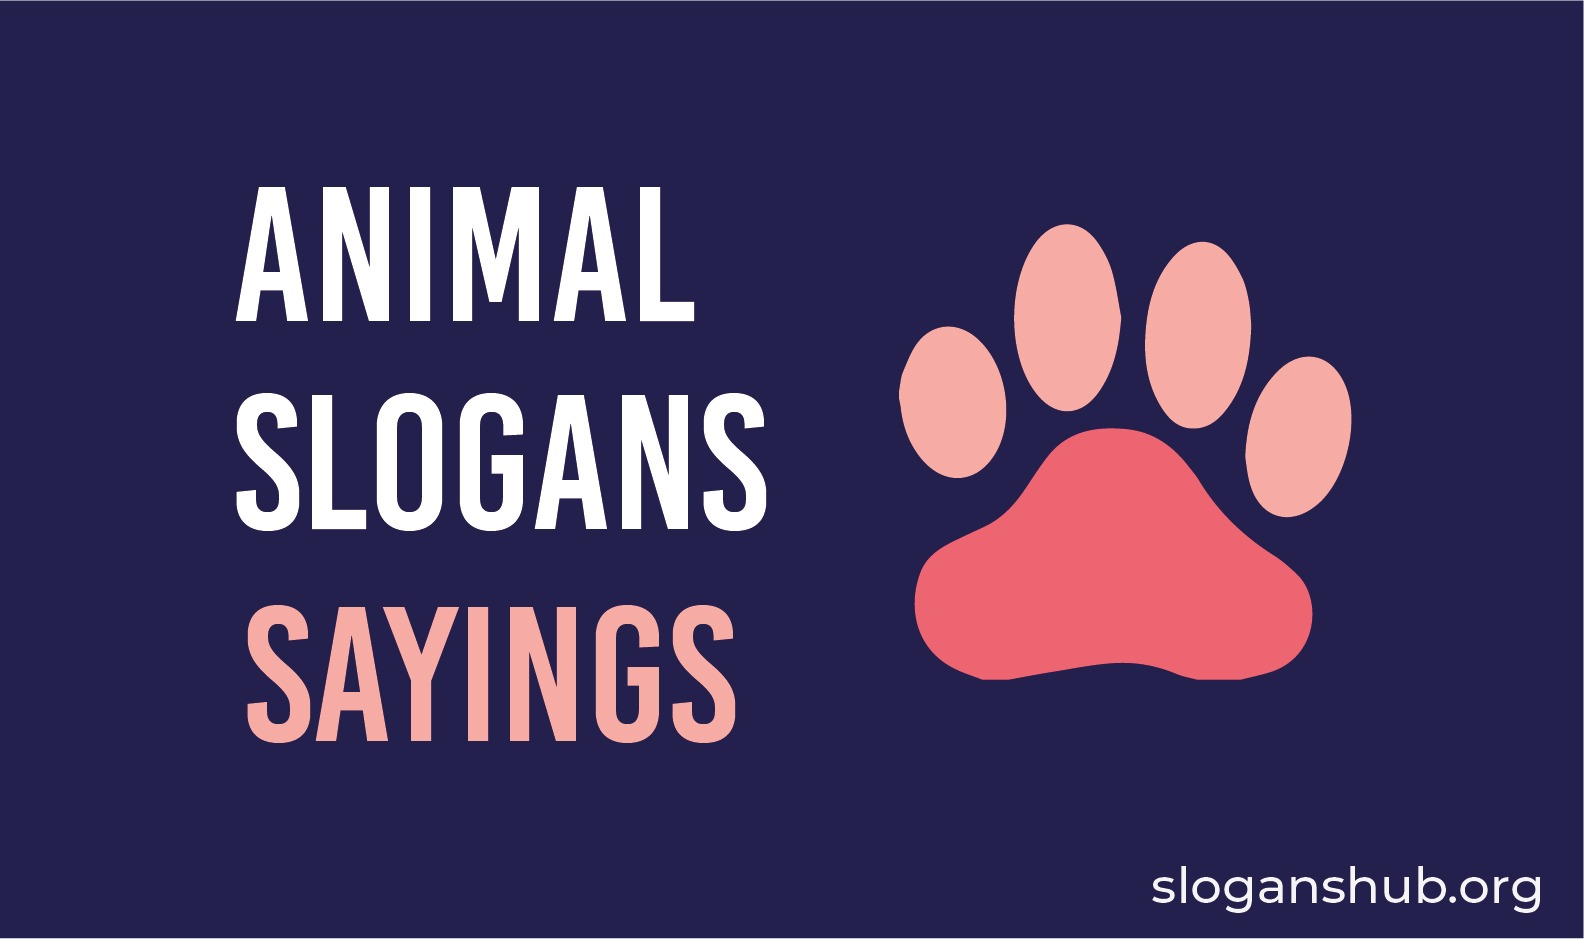 Animal Slogans & Sayings